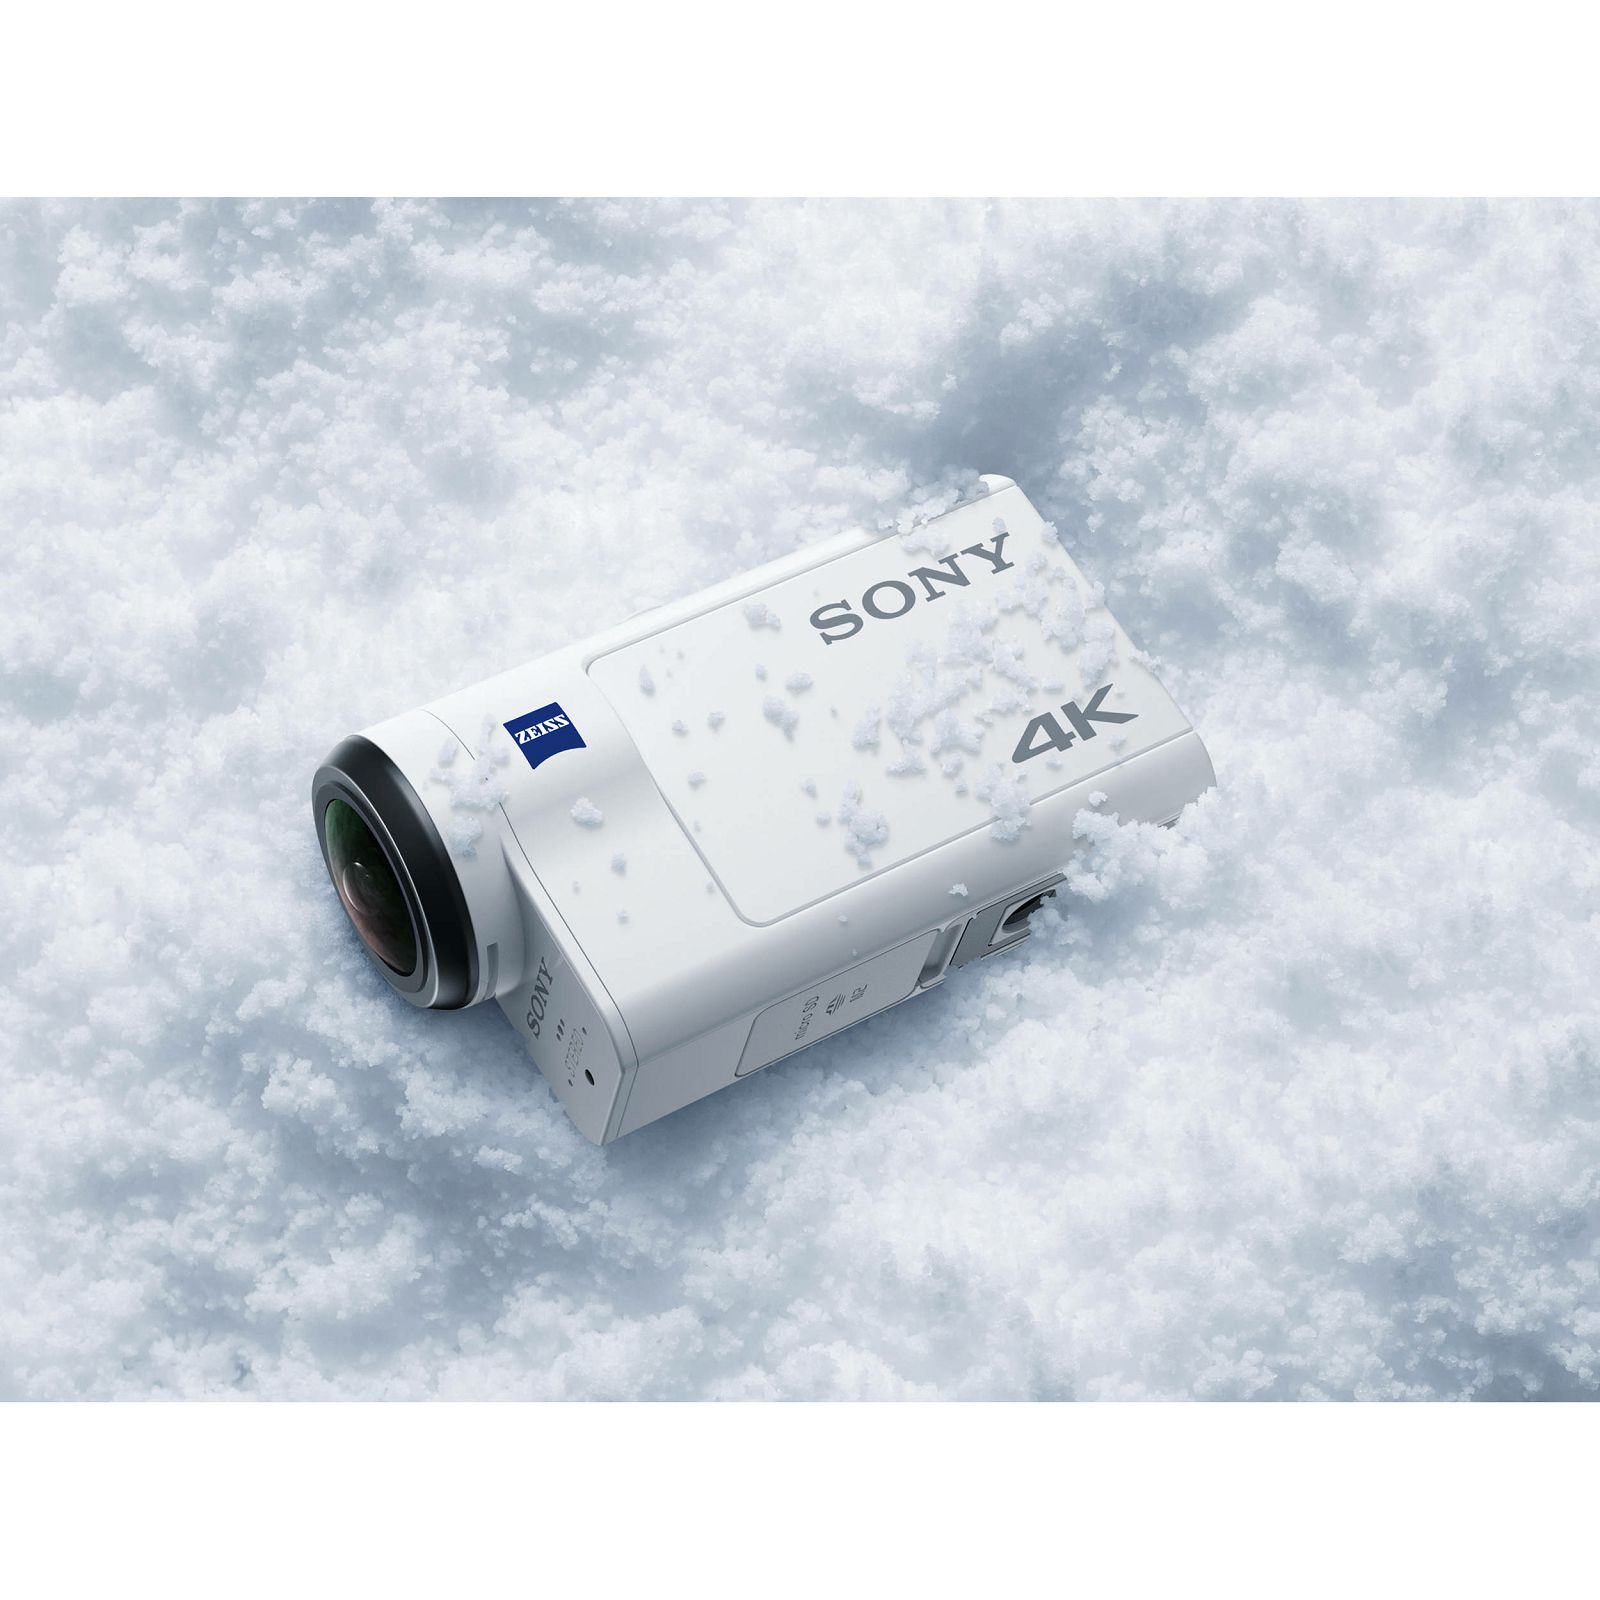 Sony FDR-X3000 4K Ultra HD WiFi GPS ActionCam FDRX3000R + KAFGP1 sportska akcijska kamera FDR-X3000r FDRX3000RFDI FDR-X3000RFDI (FDRX3000RFDI.EU)